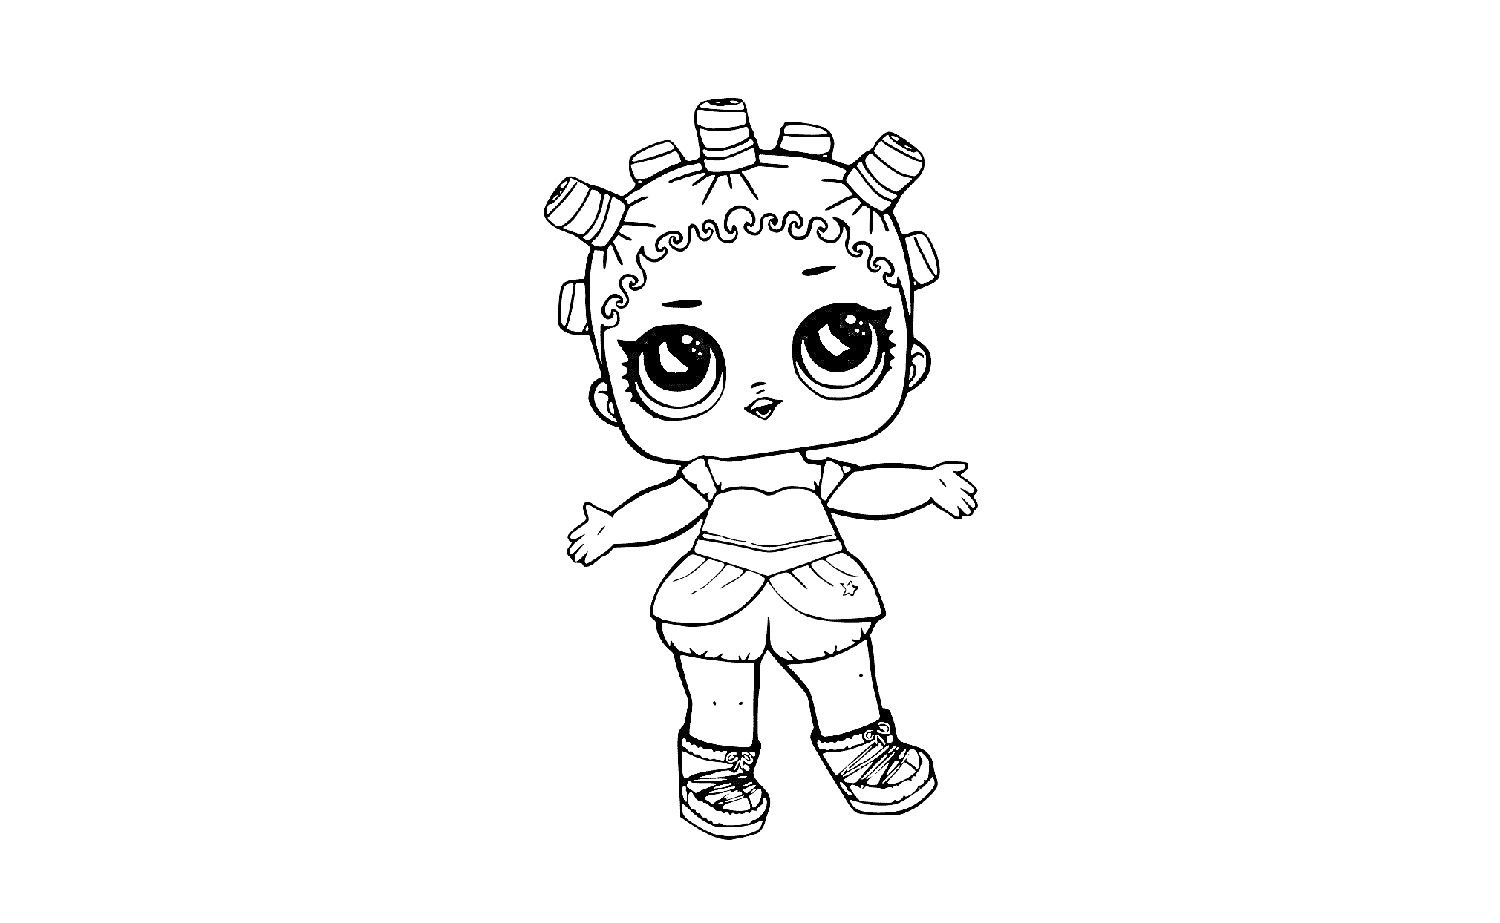 Раскраска Кукла Лол с бигудями в волосах, большая голова, большие глаза, футболка, шорты, обувь